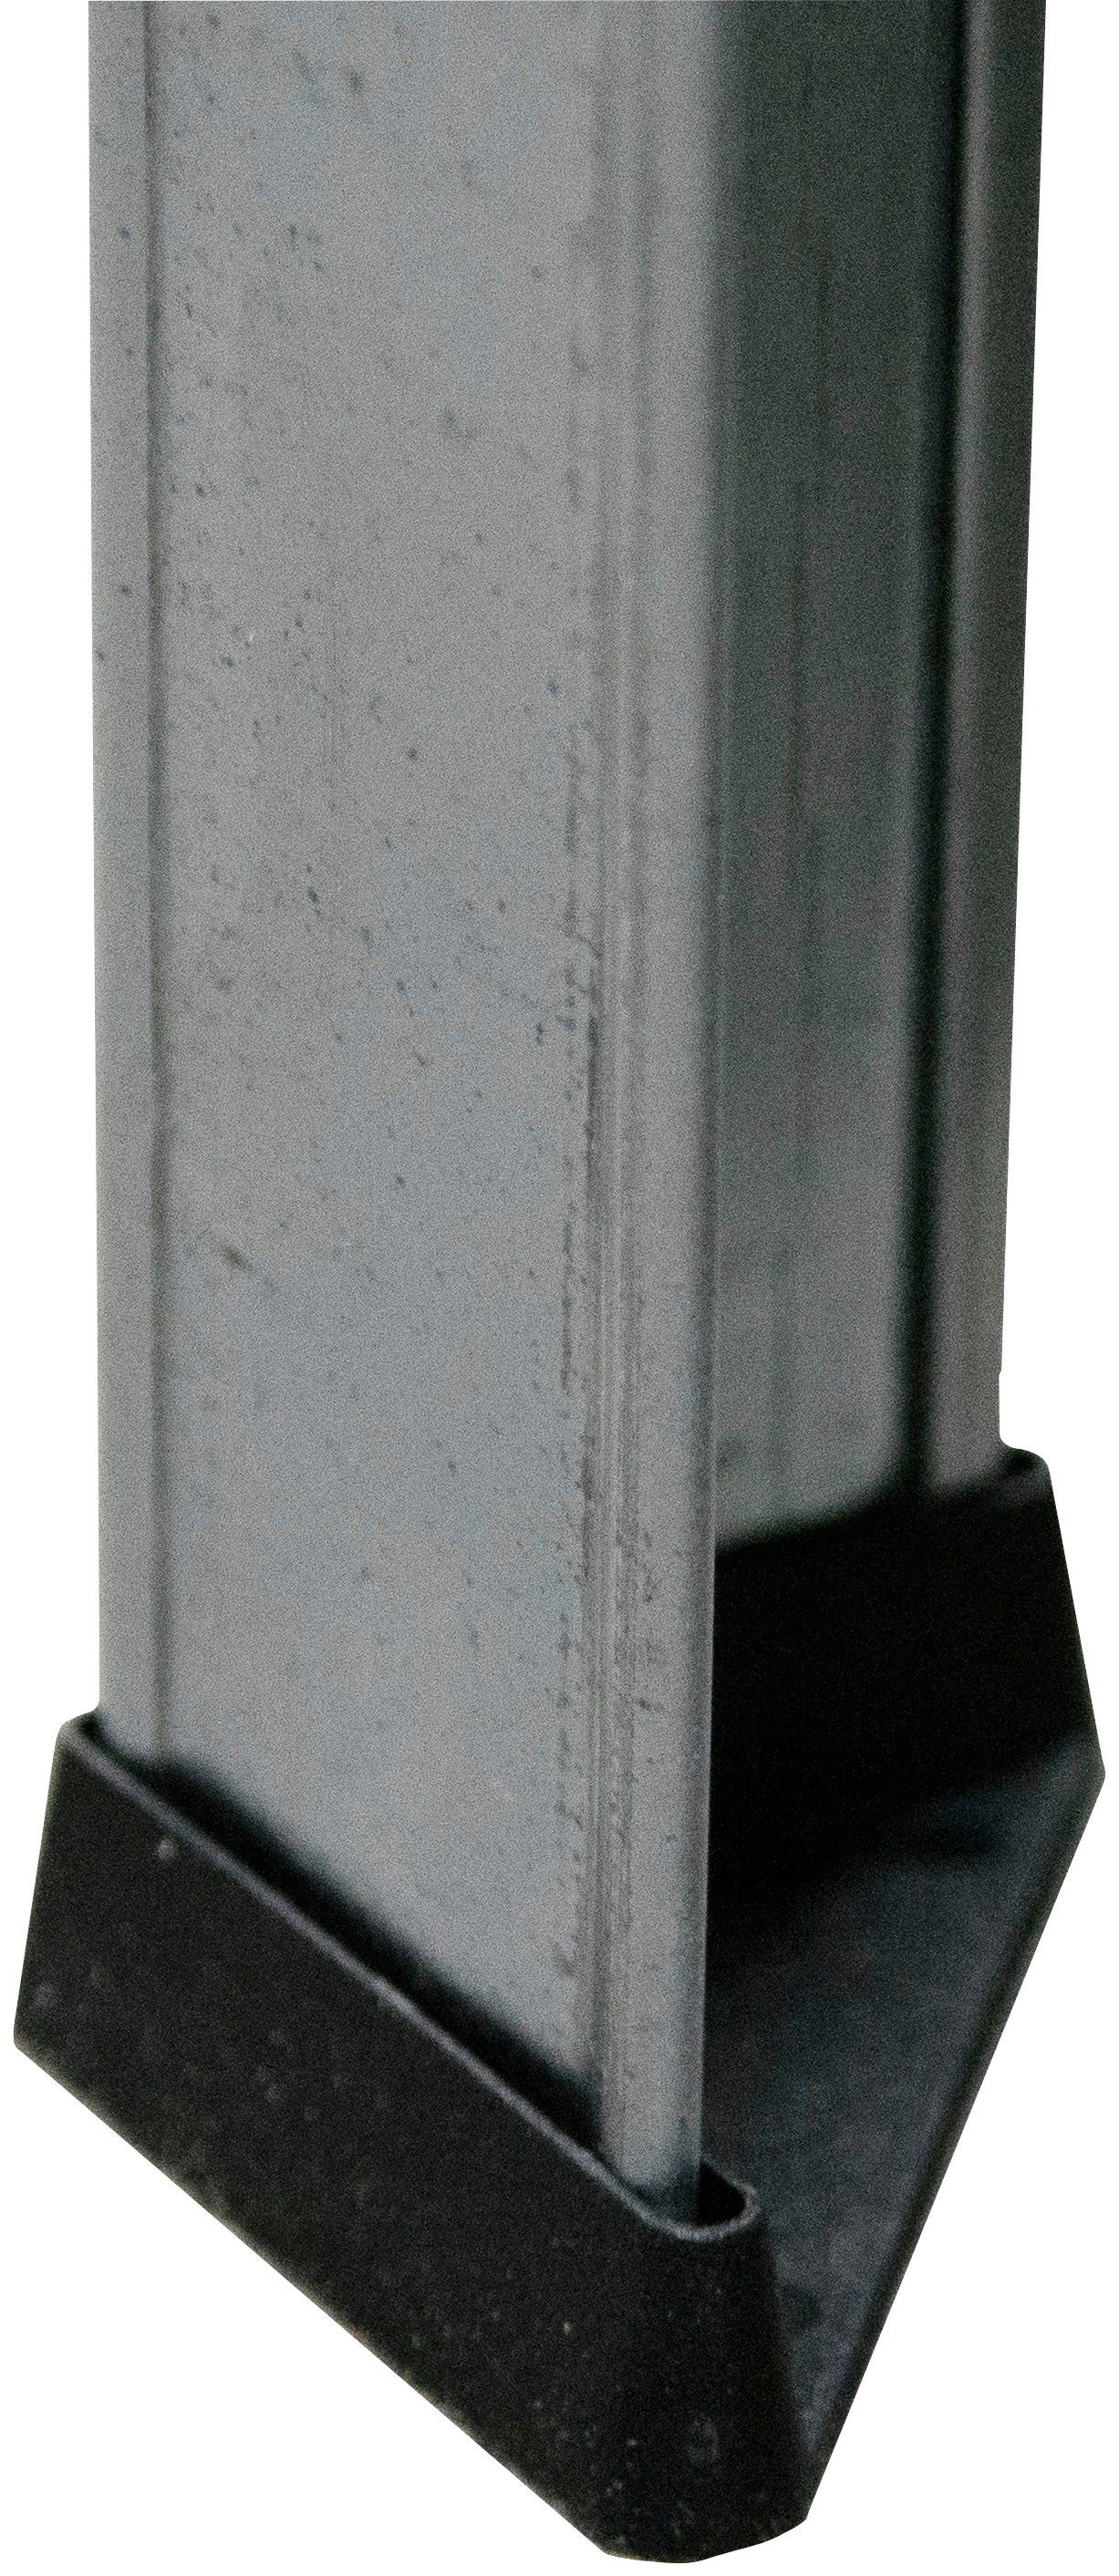 SCHULTE Regalwelt Weitspann/Schwerlastregal, Schwerlastregal Höhe: 180cm, 4 Steck Böden, erhältlich in verschiedenen Ausführungen